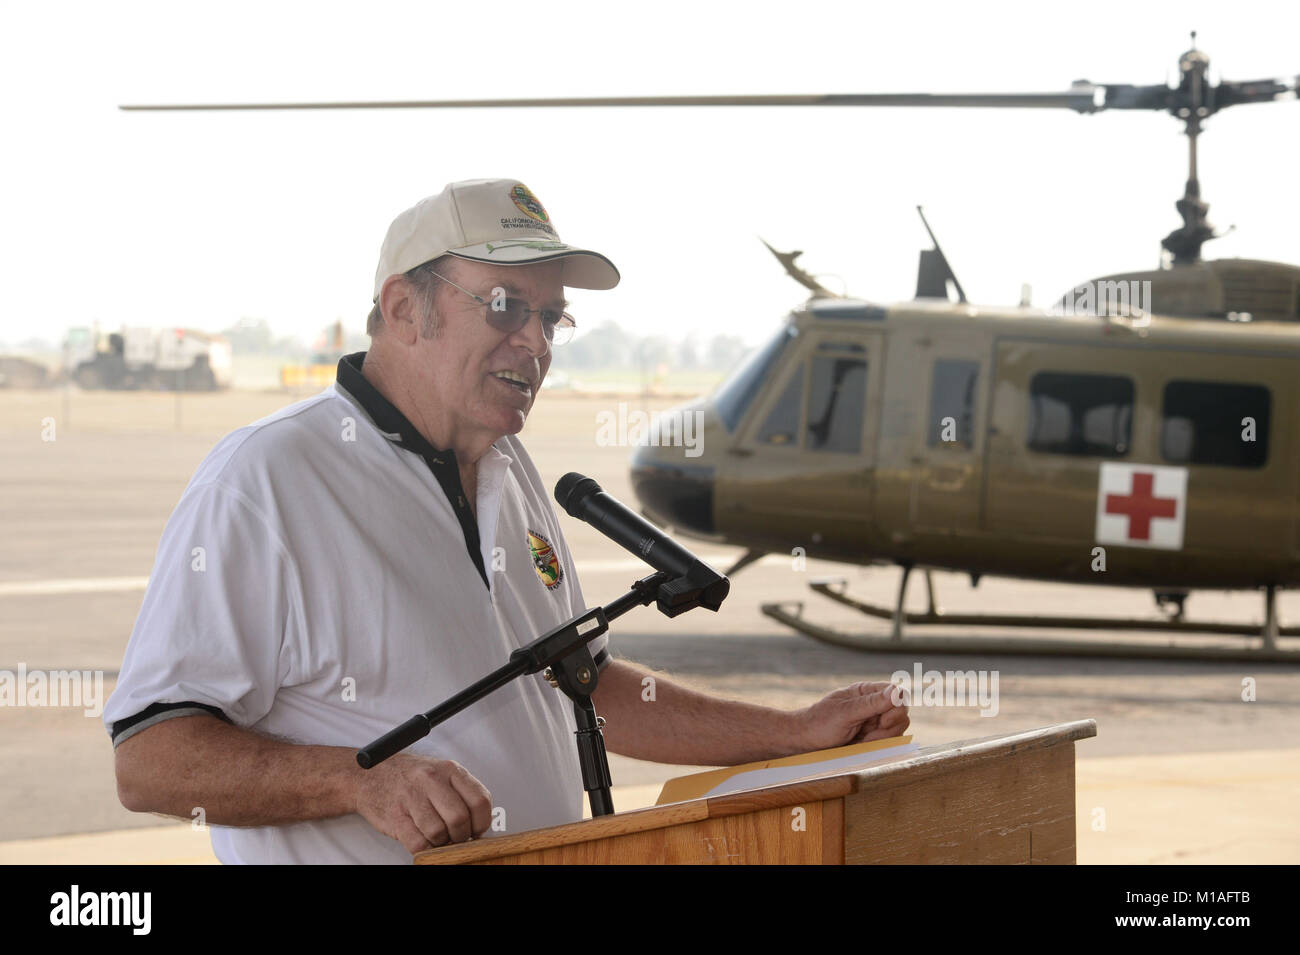 Veteran's sono stati onorati al 2016 veterani del giorno rispetto al campo Mather, California. I membri del pubblico hanno guardato come una grande placca, onorando i piloti, i membri dell'equipaggio, il personale di manutenzione e il personale medico che ha servito durante la guerra del Vietnam, è stato consegnato da un UH-1 Huey helicoptor. Veteran's erano anche onorato con un perno speciale recogonizing il loro servizio per il loro paese. Foto di US Air Force Master Sgt. David J. Loeffler. Foto Stock